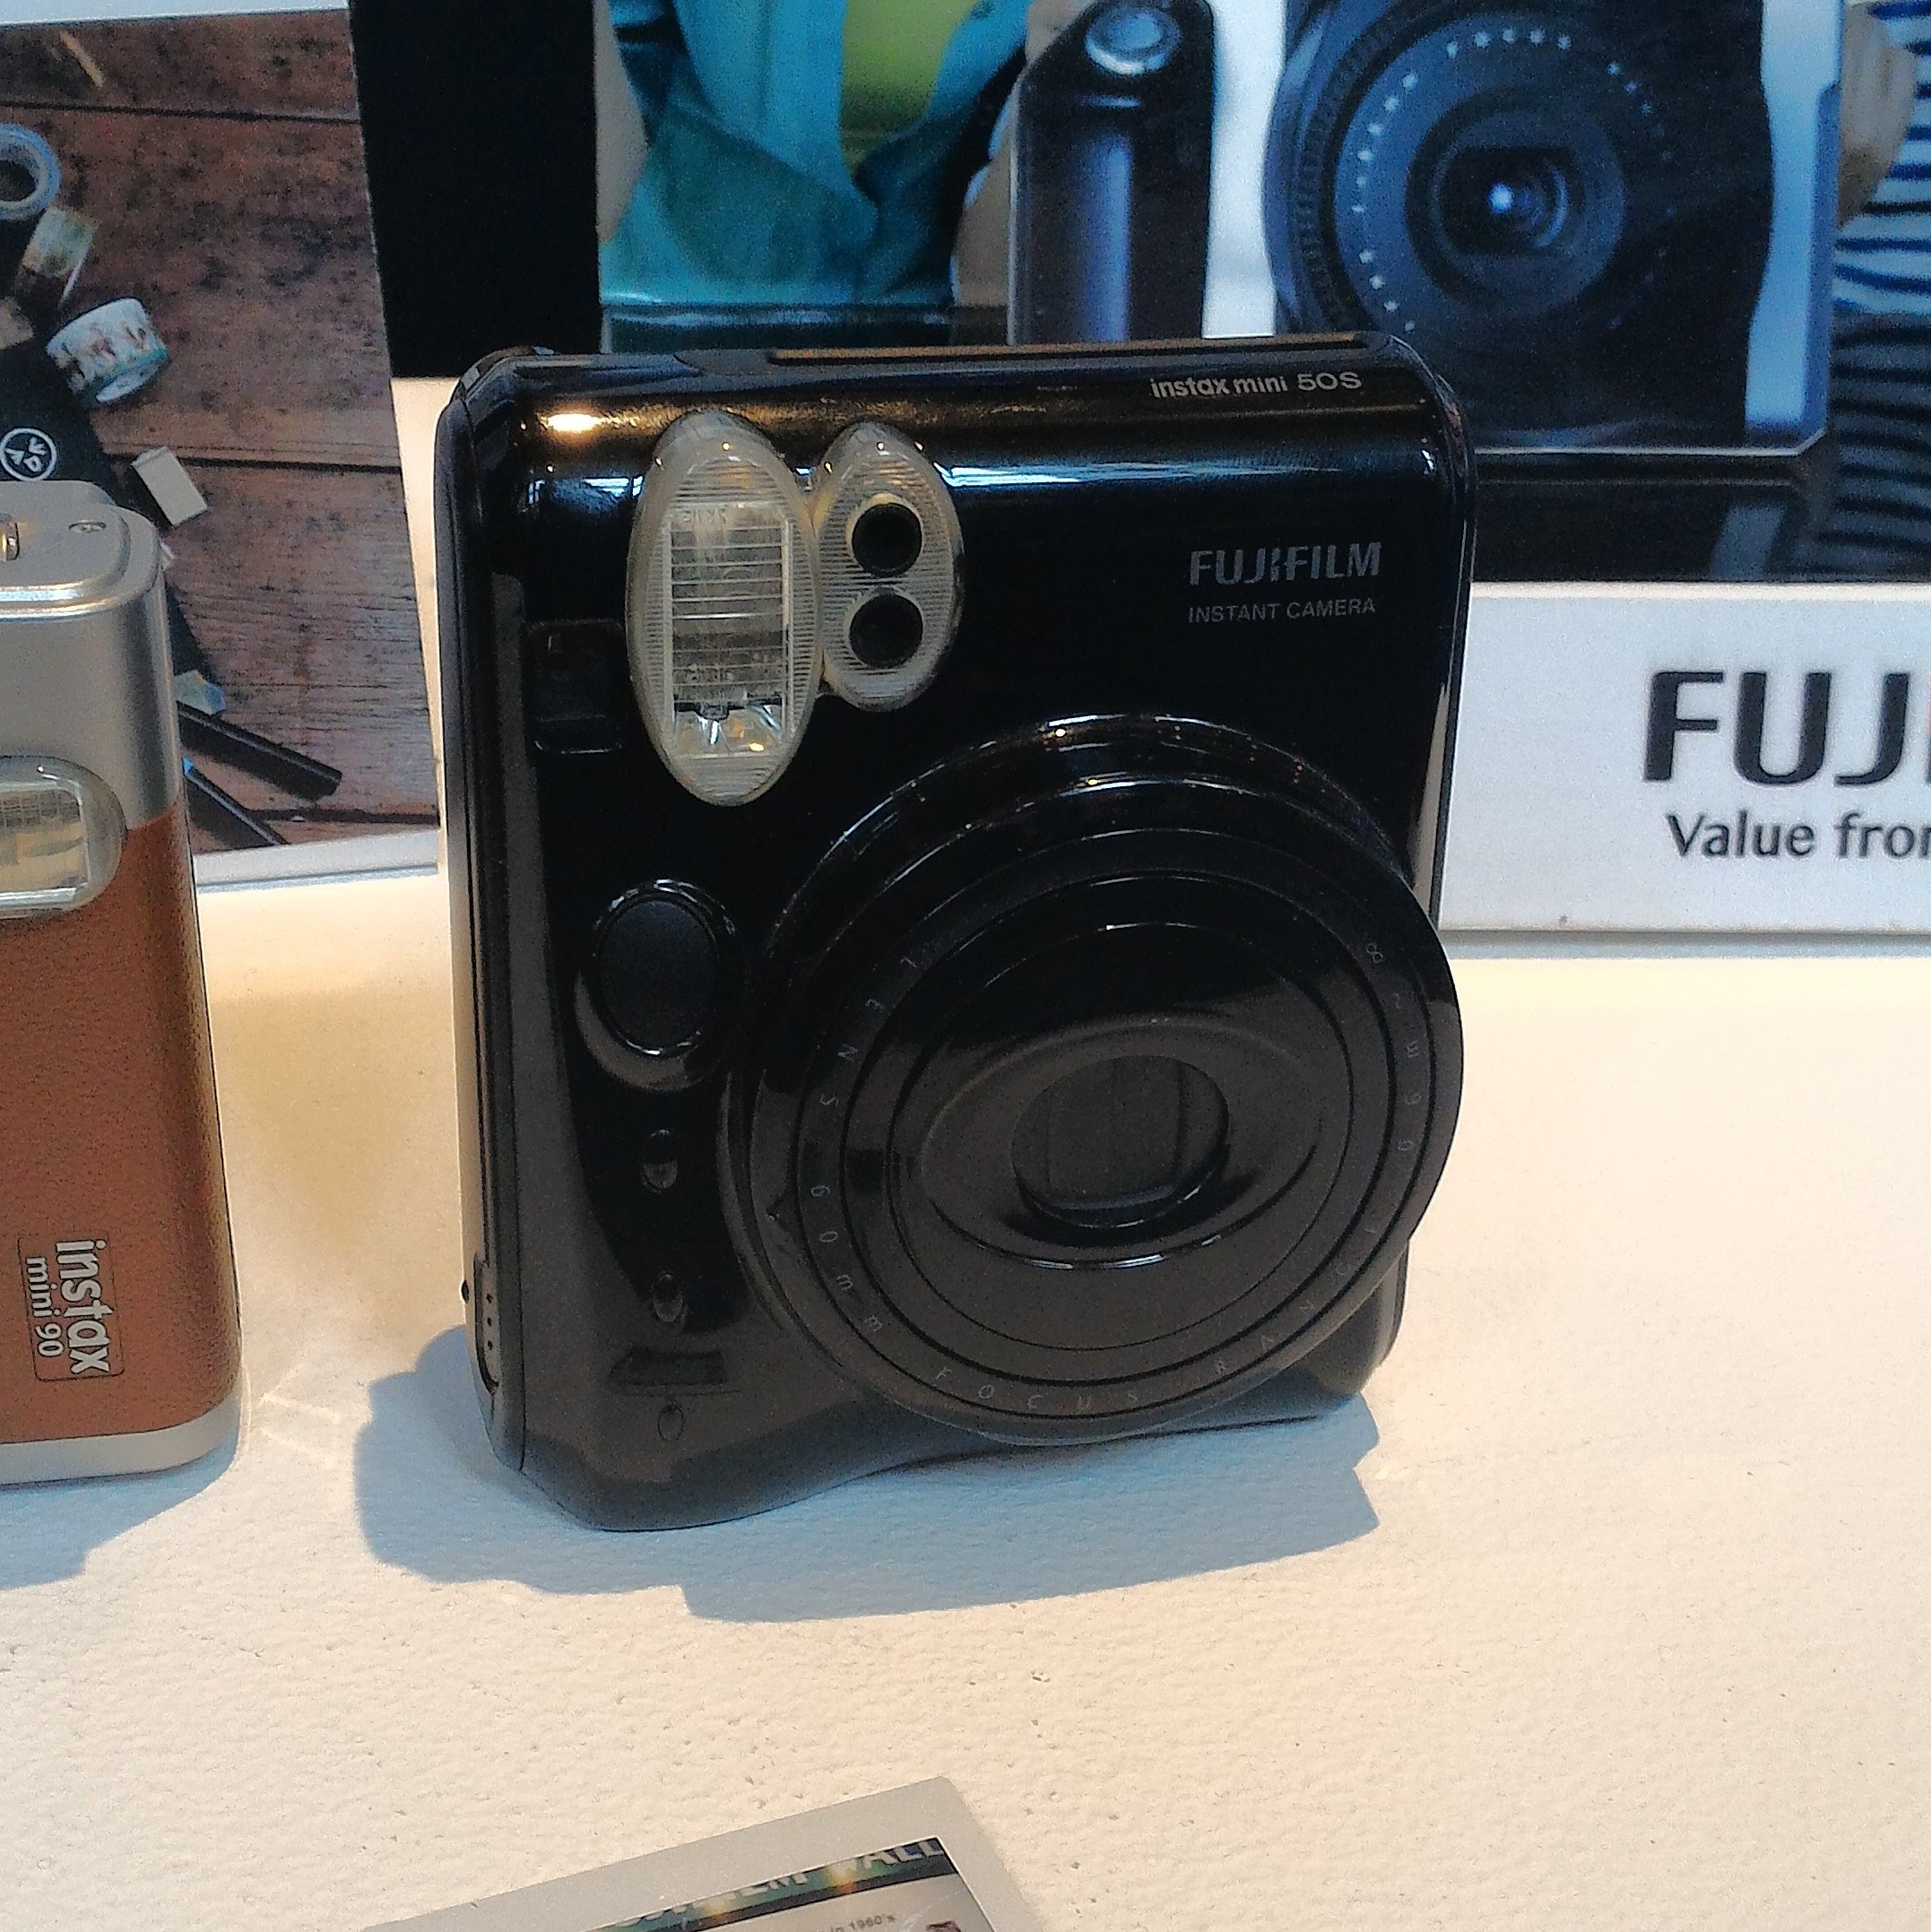 Fujifilm Instax Series Mini 50S